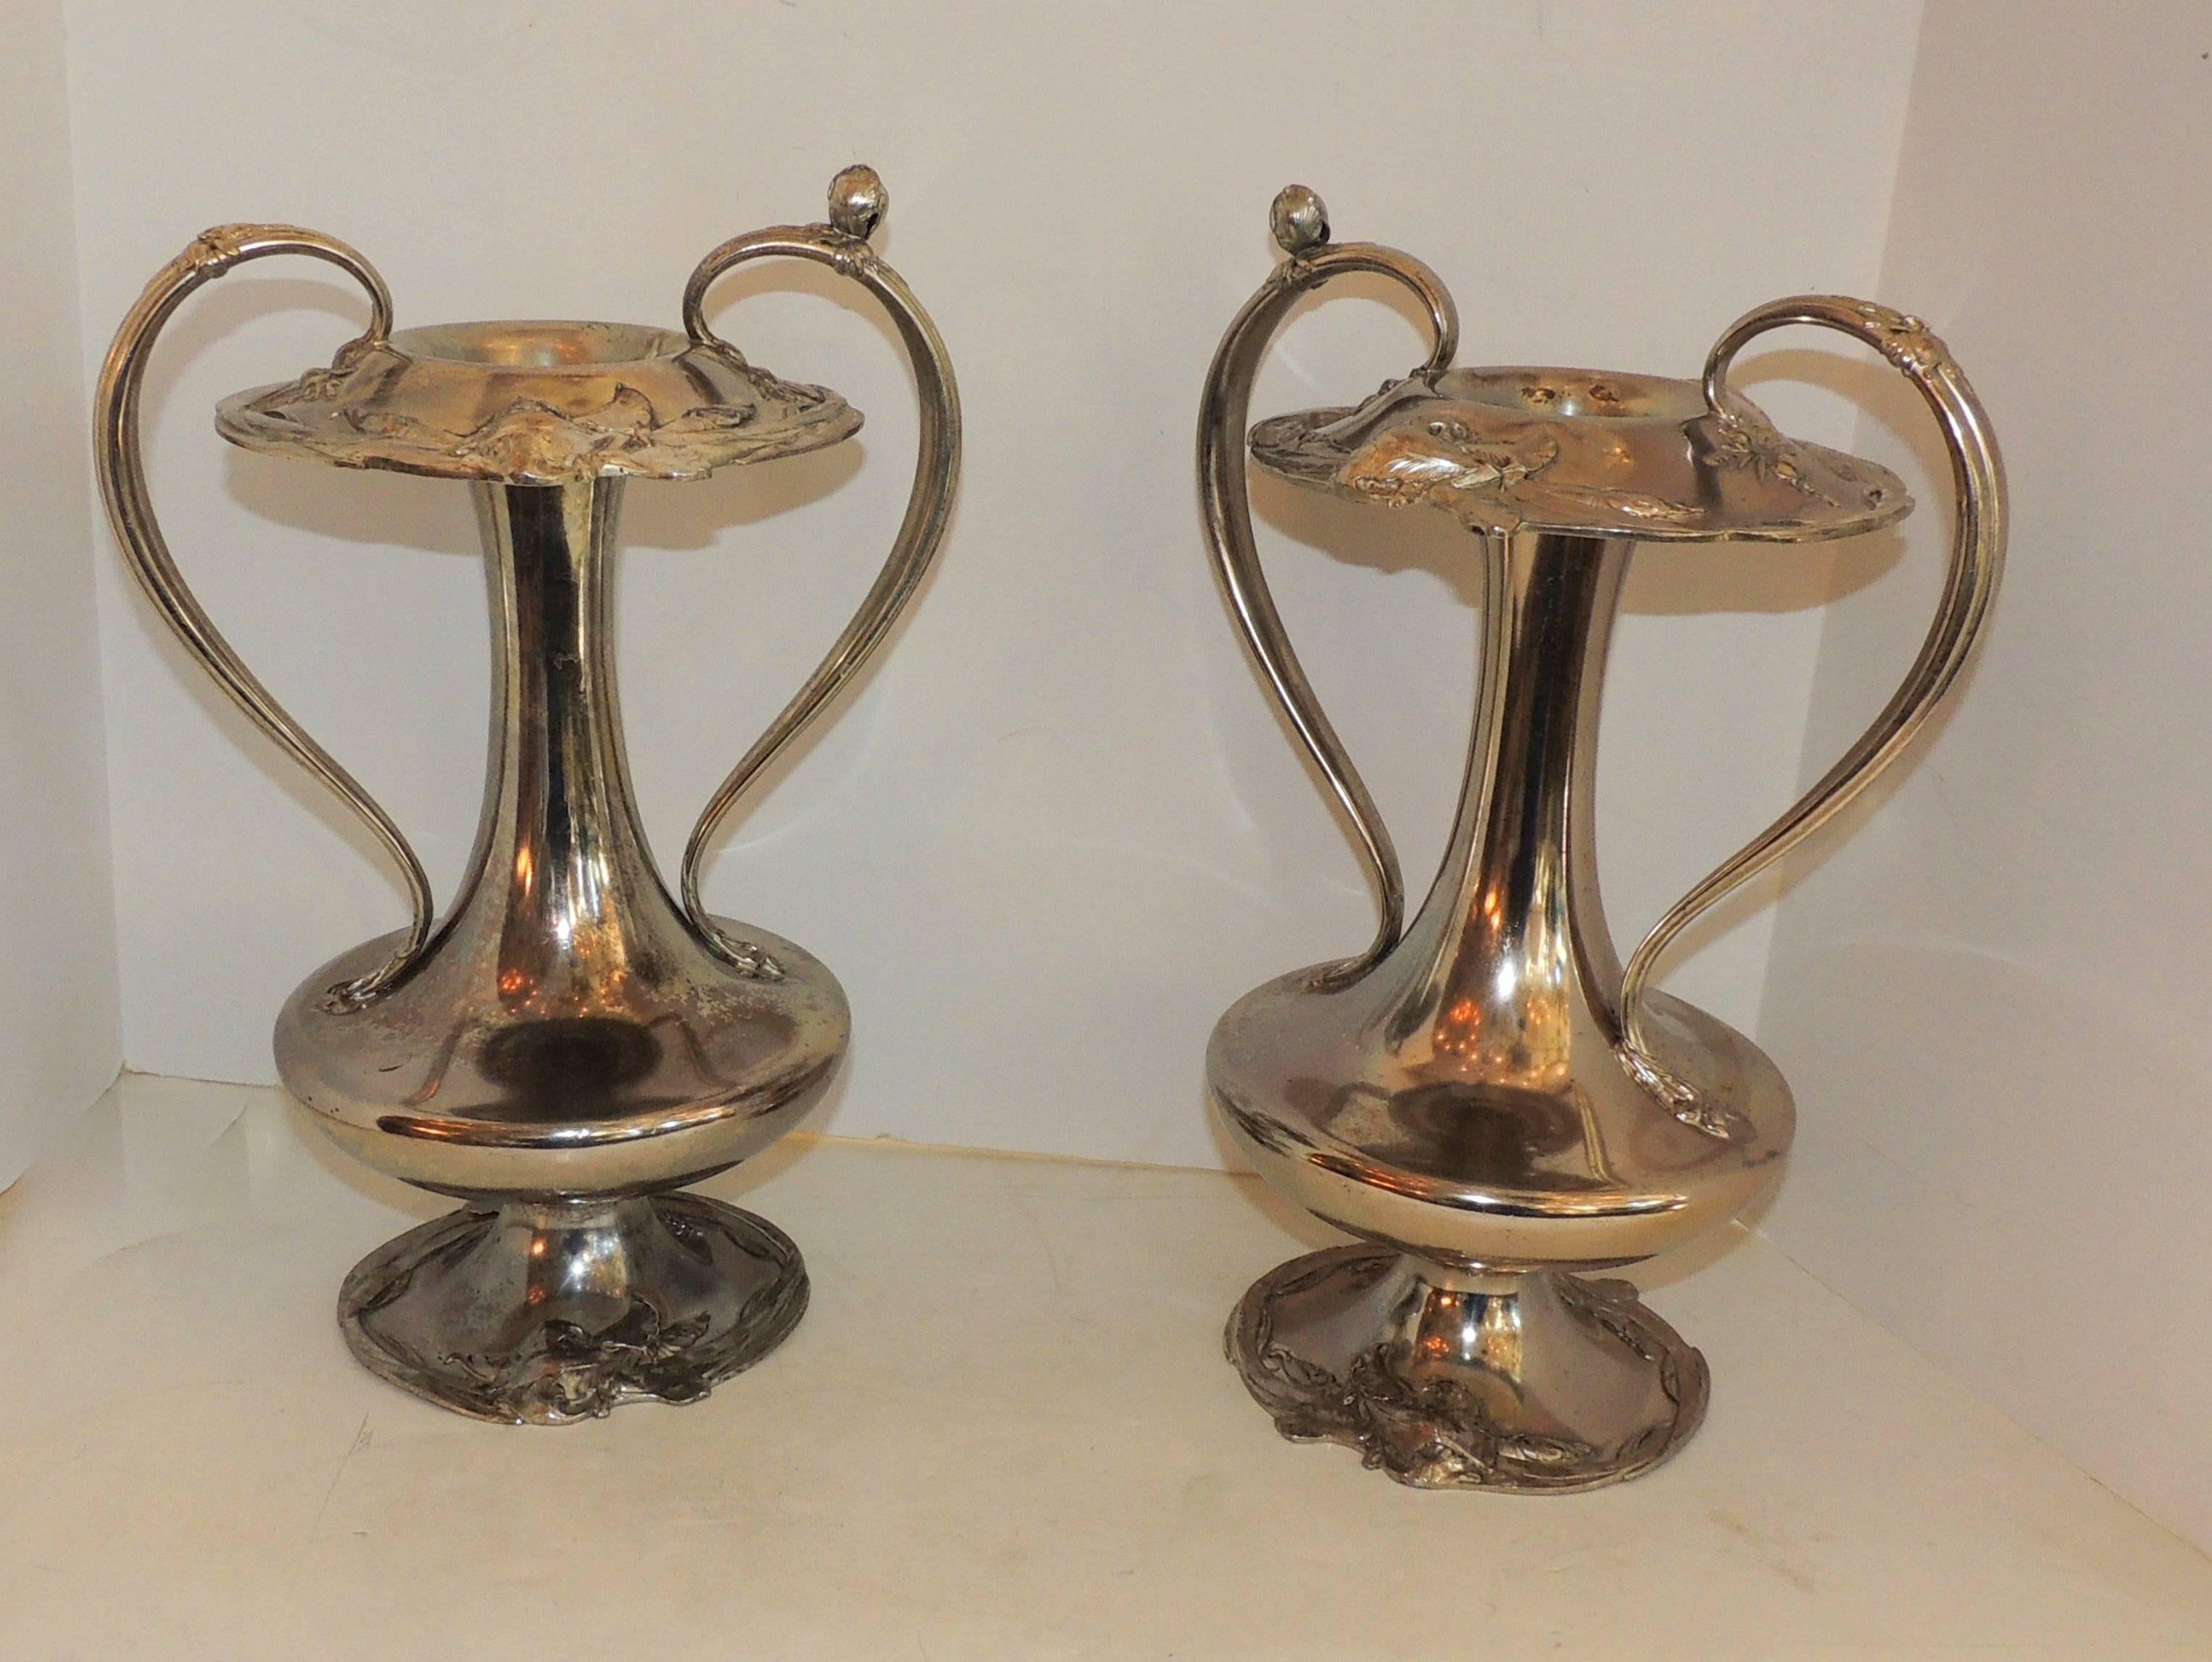 Ein feines großes Paar Reed & Barton Art Nouveau Form Silber Platte Urne Vasen mit Griff in der Art der WMF. 

Maße: 14 x 9.5.